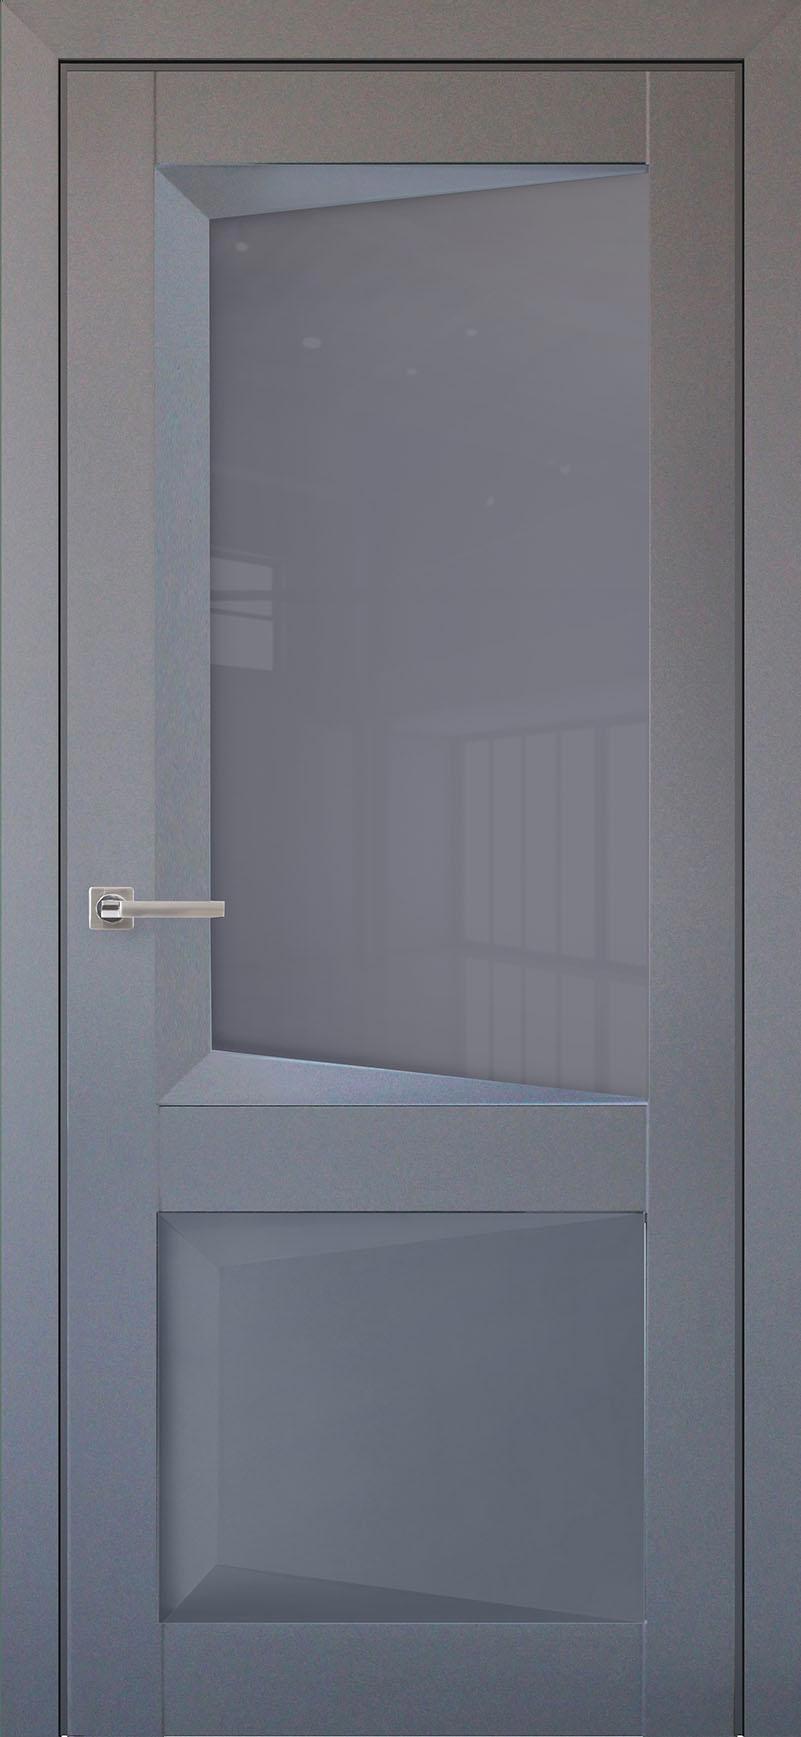 90903213 Межкомнатная дверь Перфекто 108 остеклённая без замка и петель в комплекте 200x70см серый STLM-0420039 UBERTURE